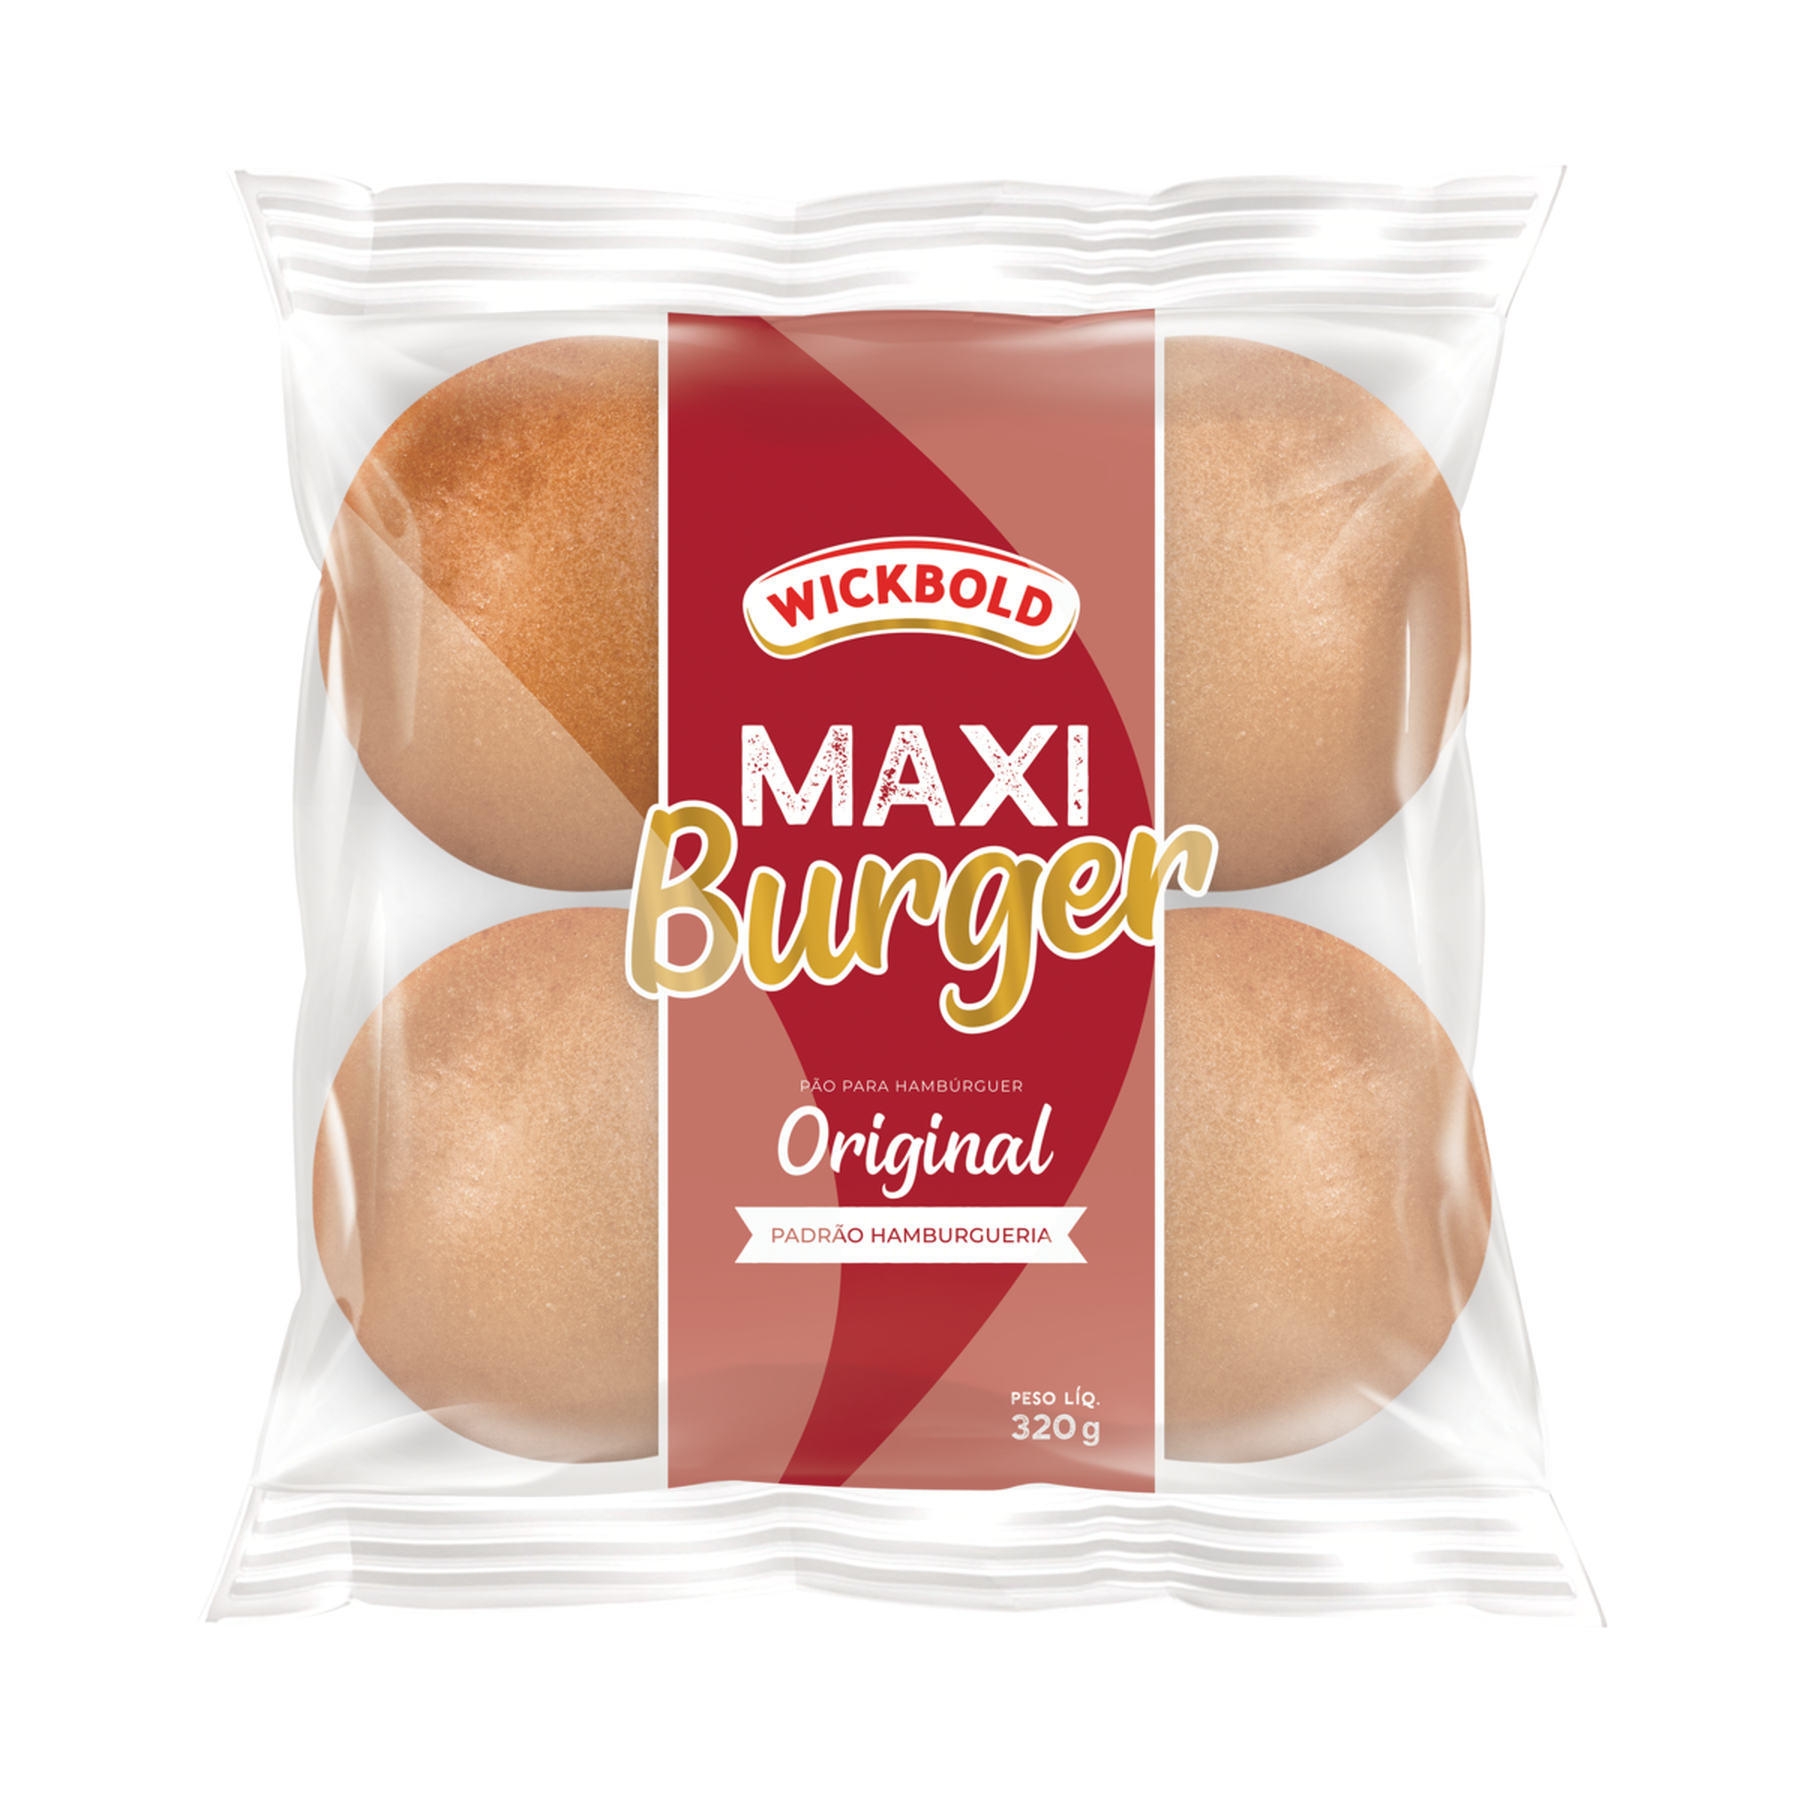 Pão para Hambúrguer Original Maxi Burger Wickbold Pacote 320g